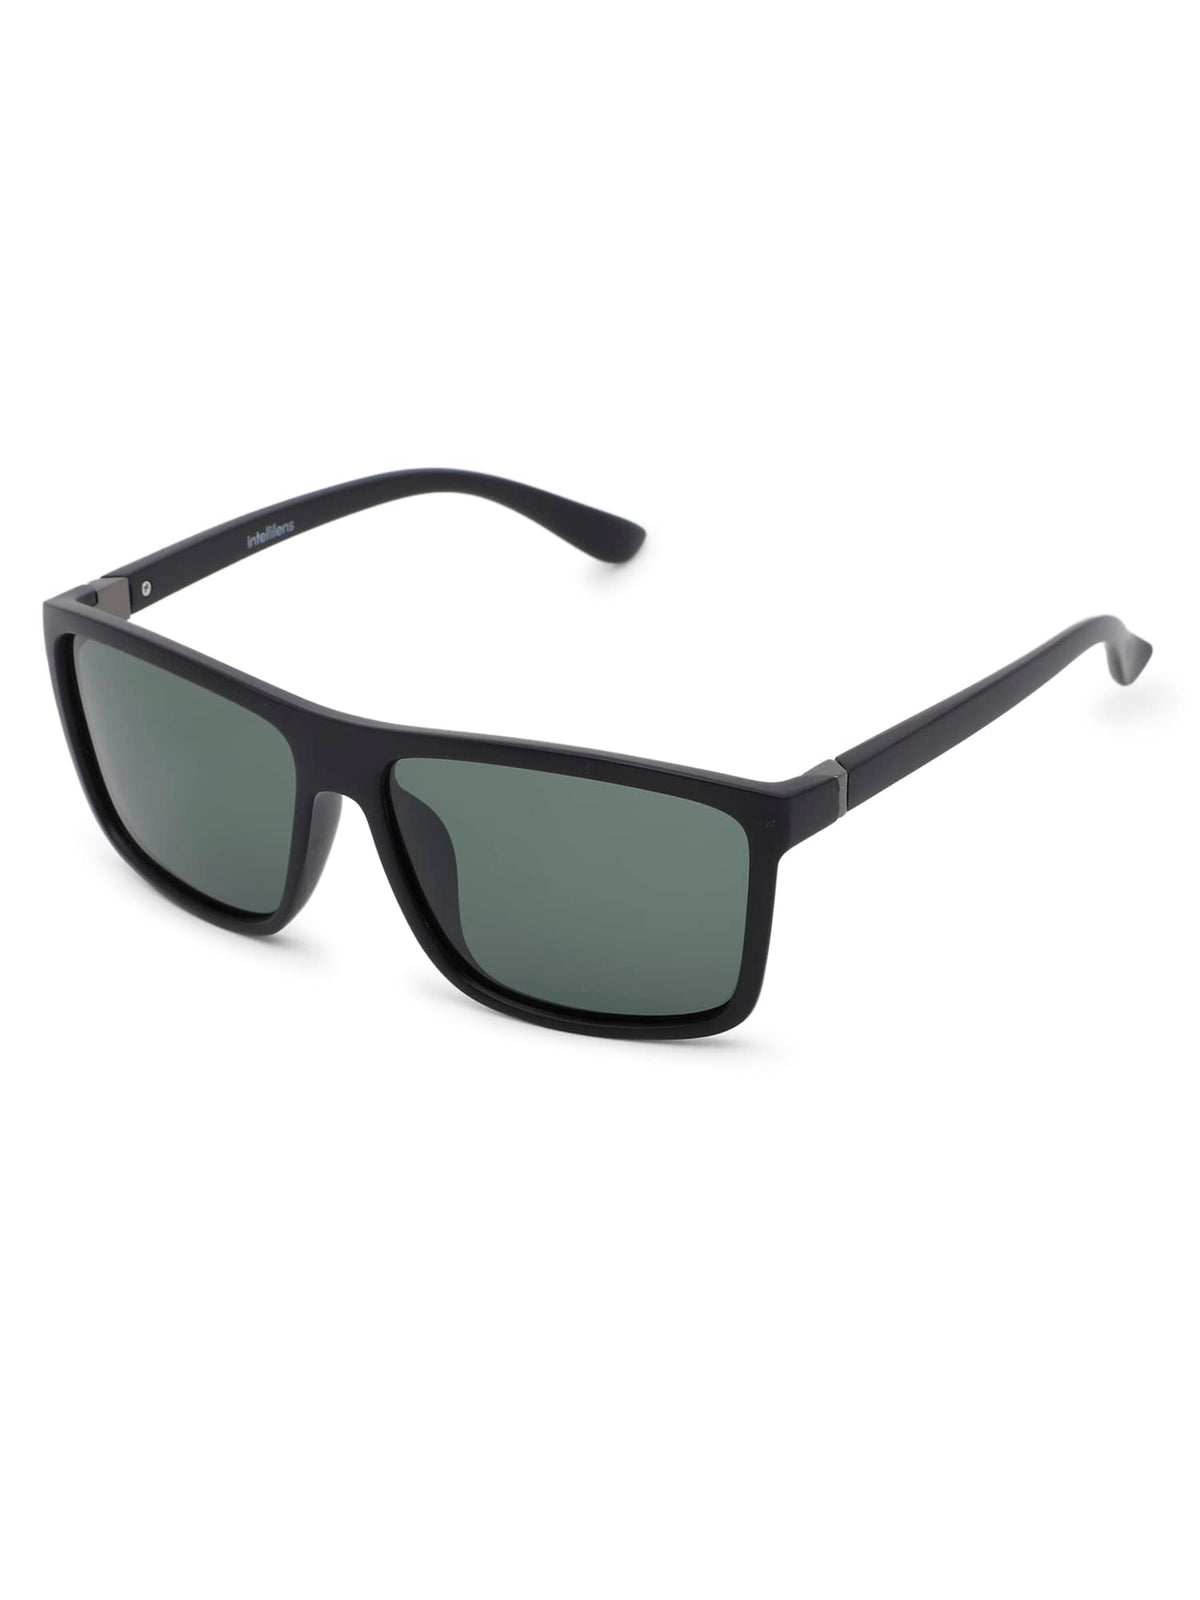 Intellilens Square UV Protected Sunglasses For Men & Women | Goggles for Men & Women (Black & Green) (60-11-145)